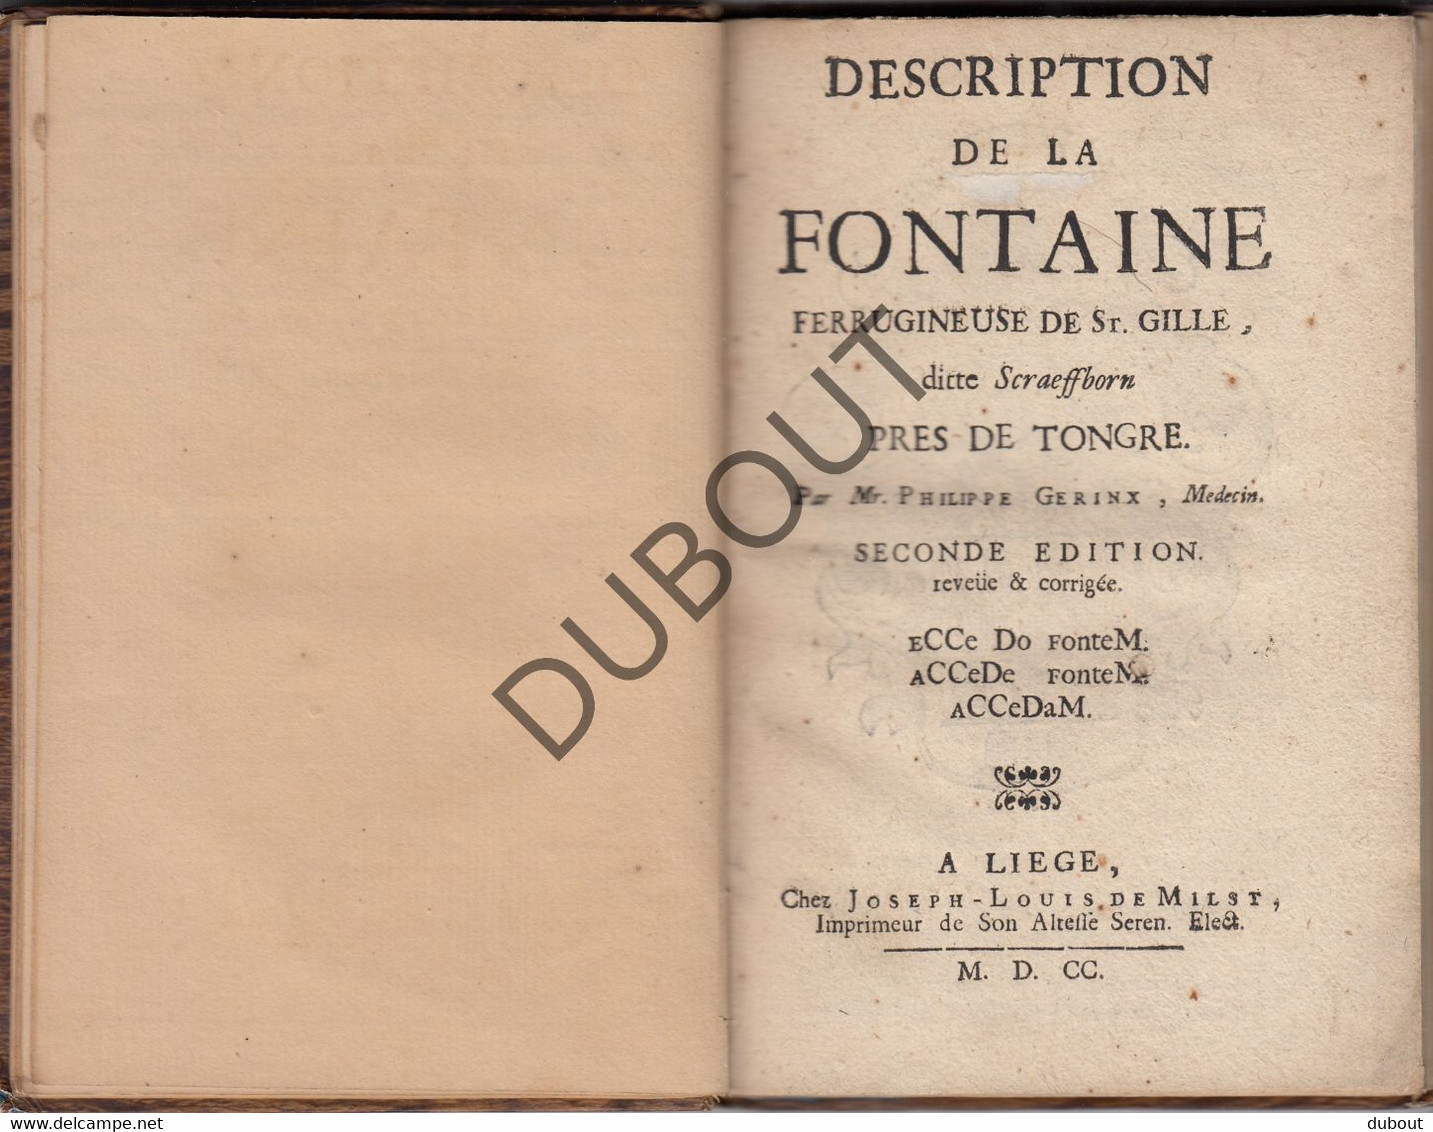 TONGEREN: Aquatherapie - Description De La Fontaine-St Gillis- Gerinx 1700 (R425) - Jusque 1700